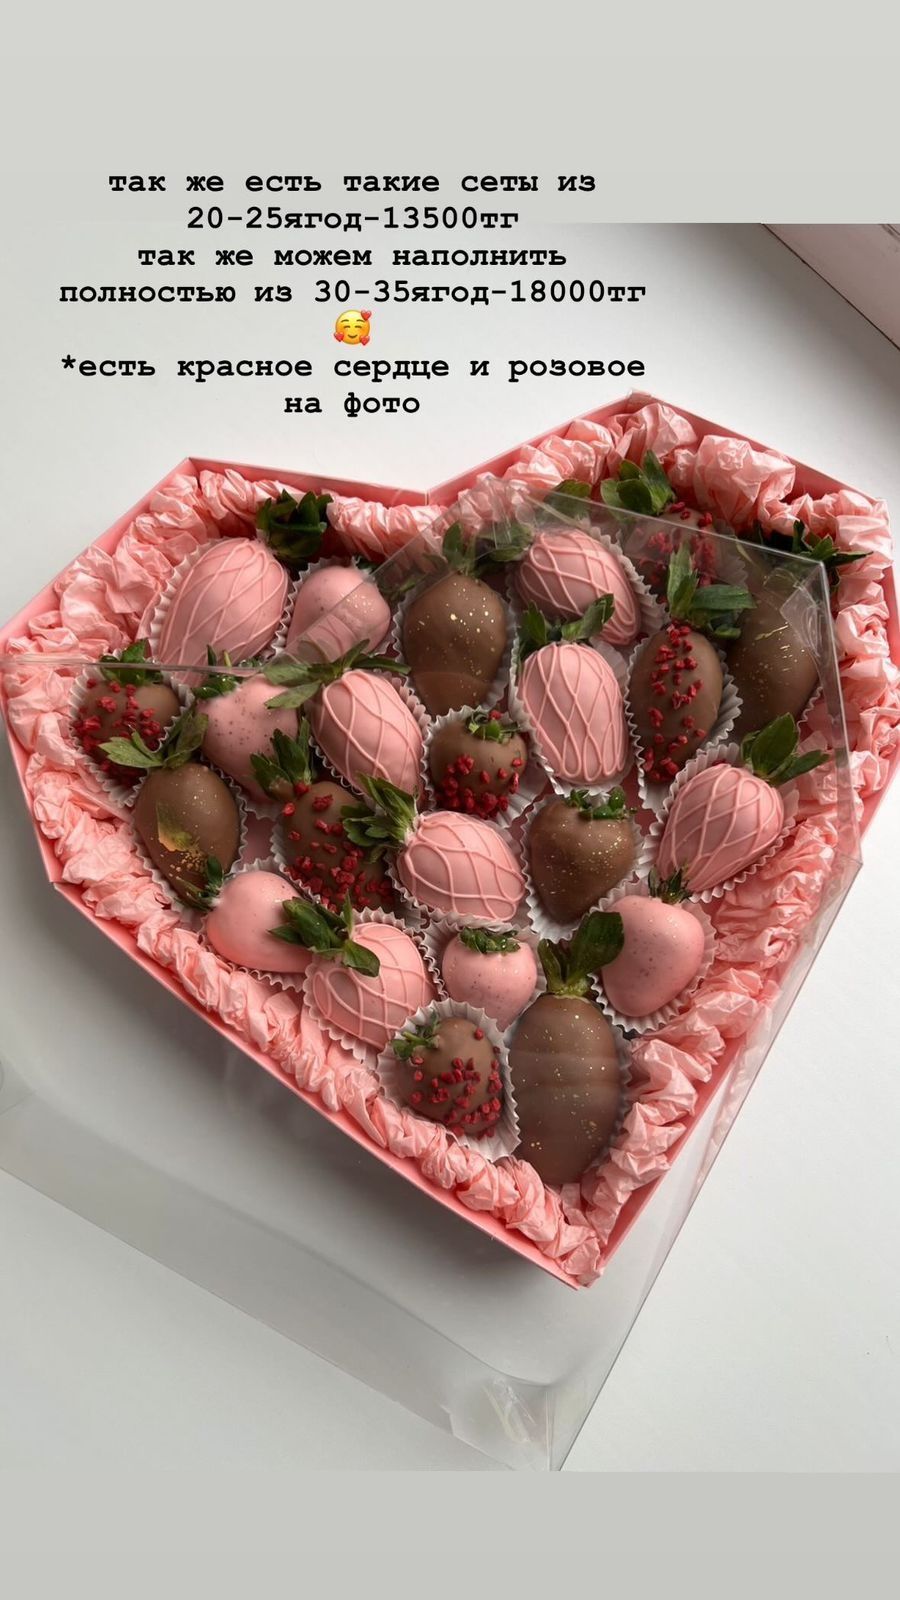 Подарок Букет Боксы клубника в шоколаде заказать Алматы до 24-00